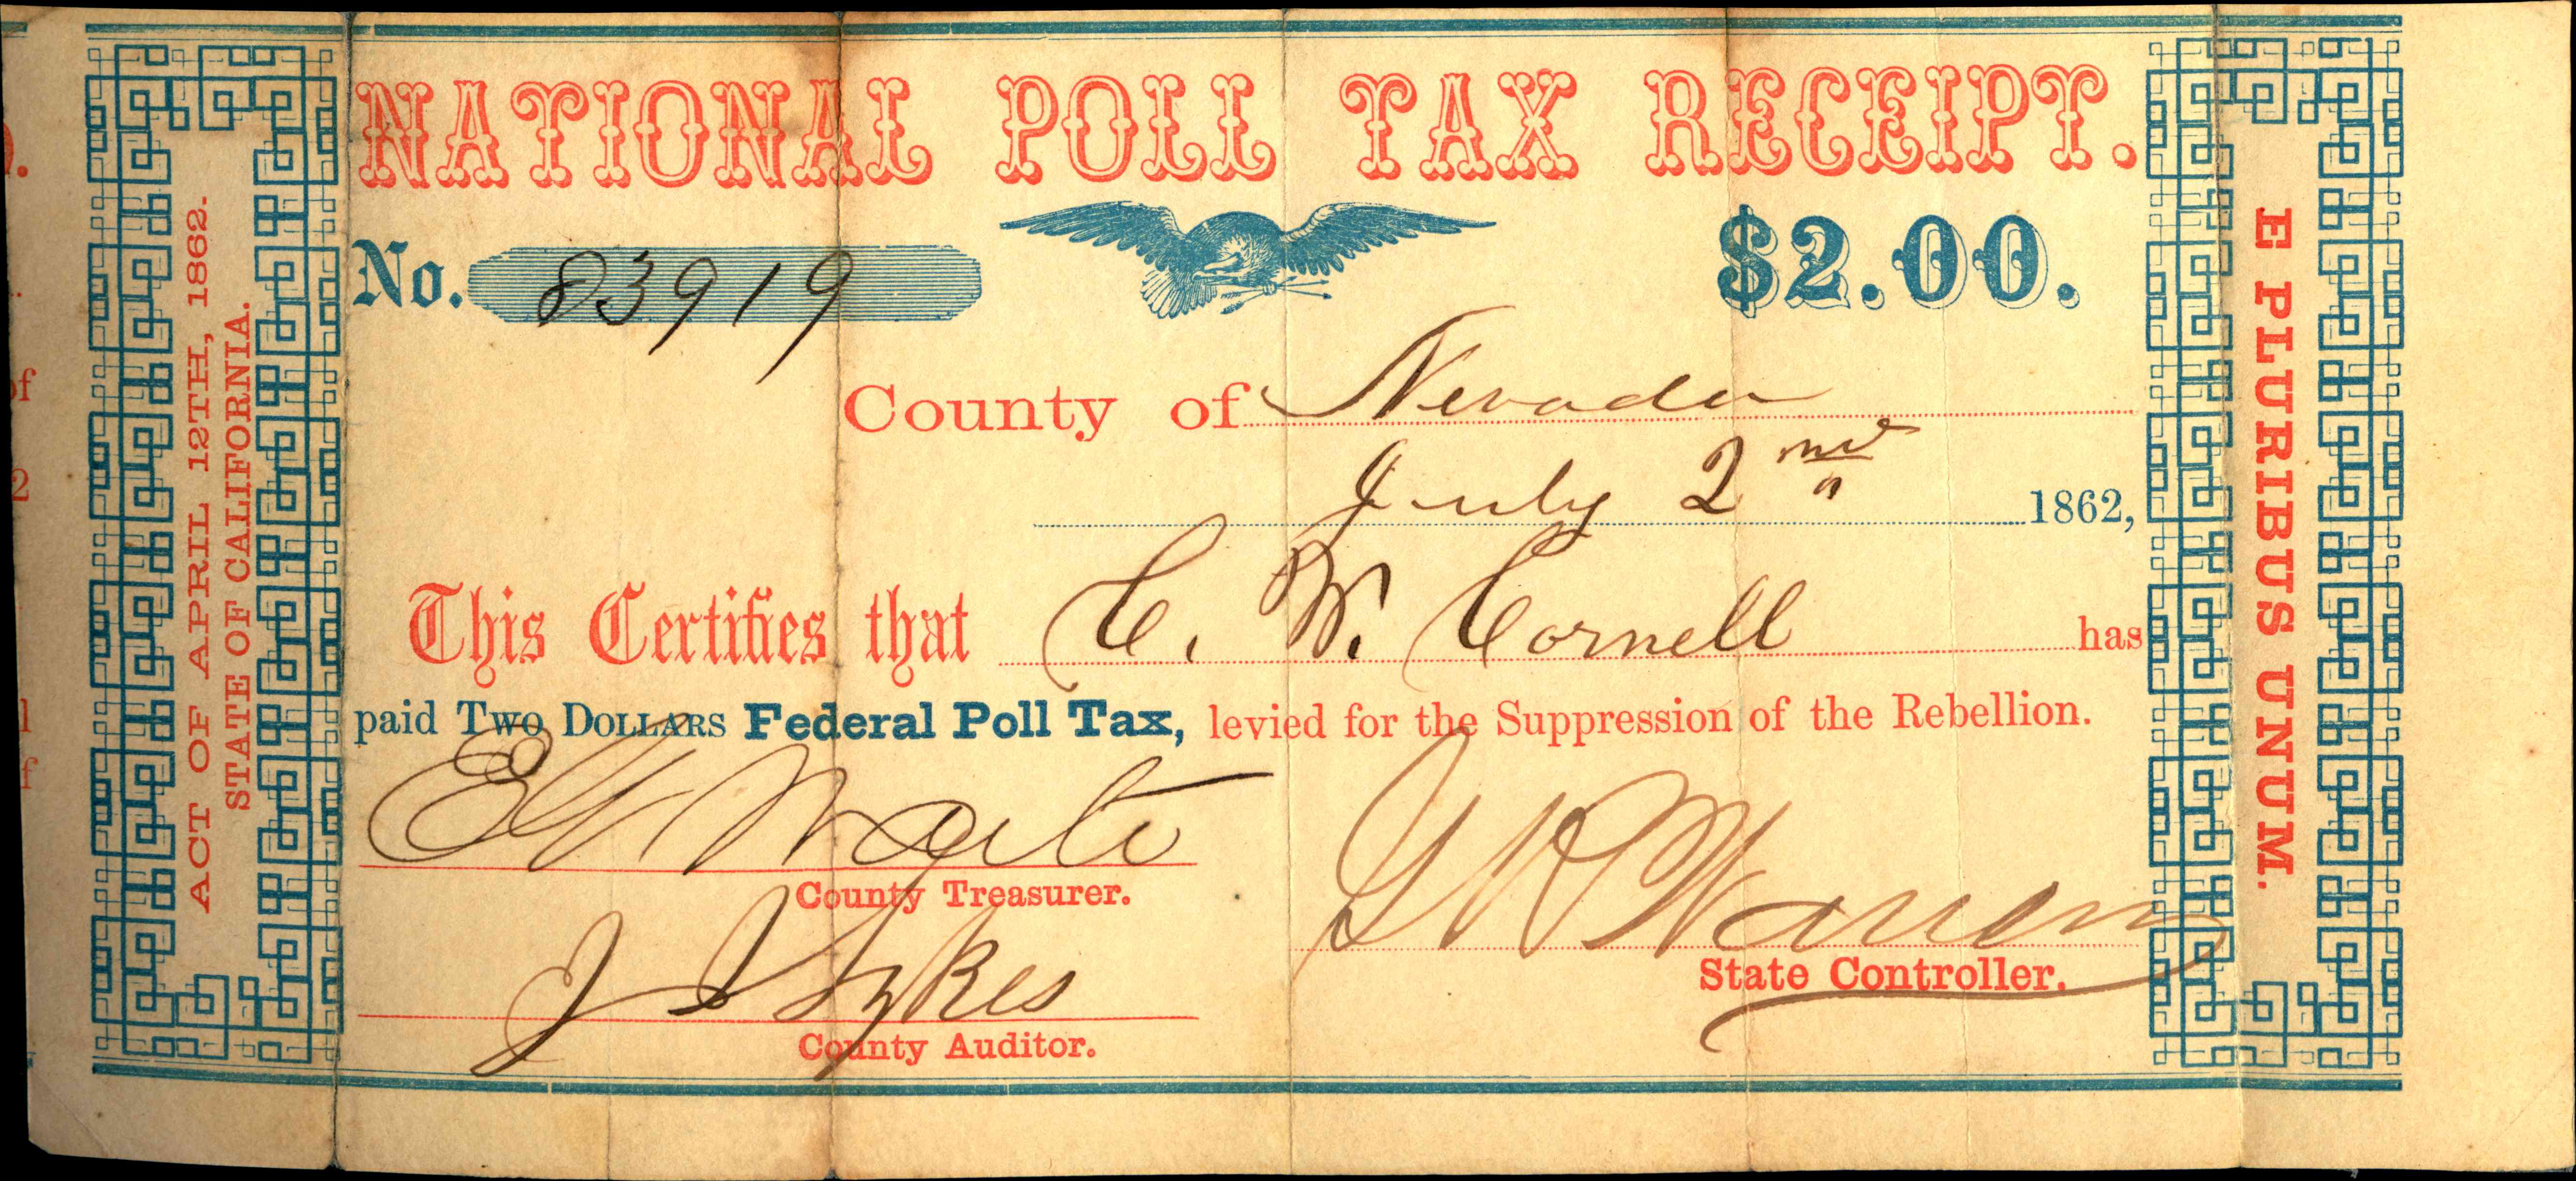 Poll taxes